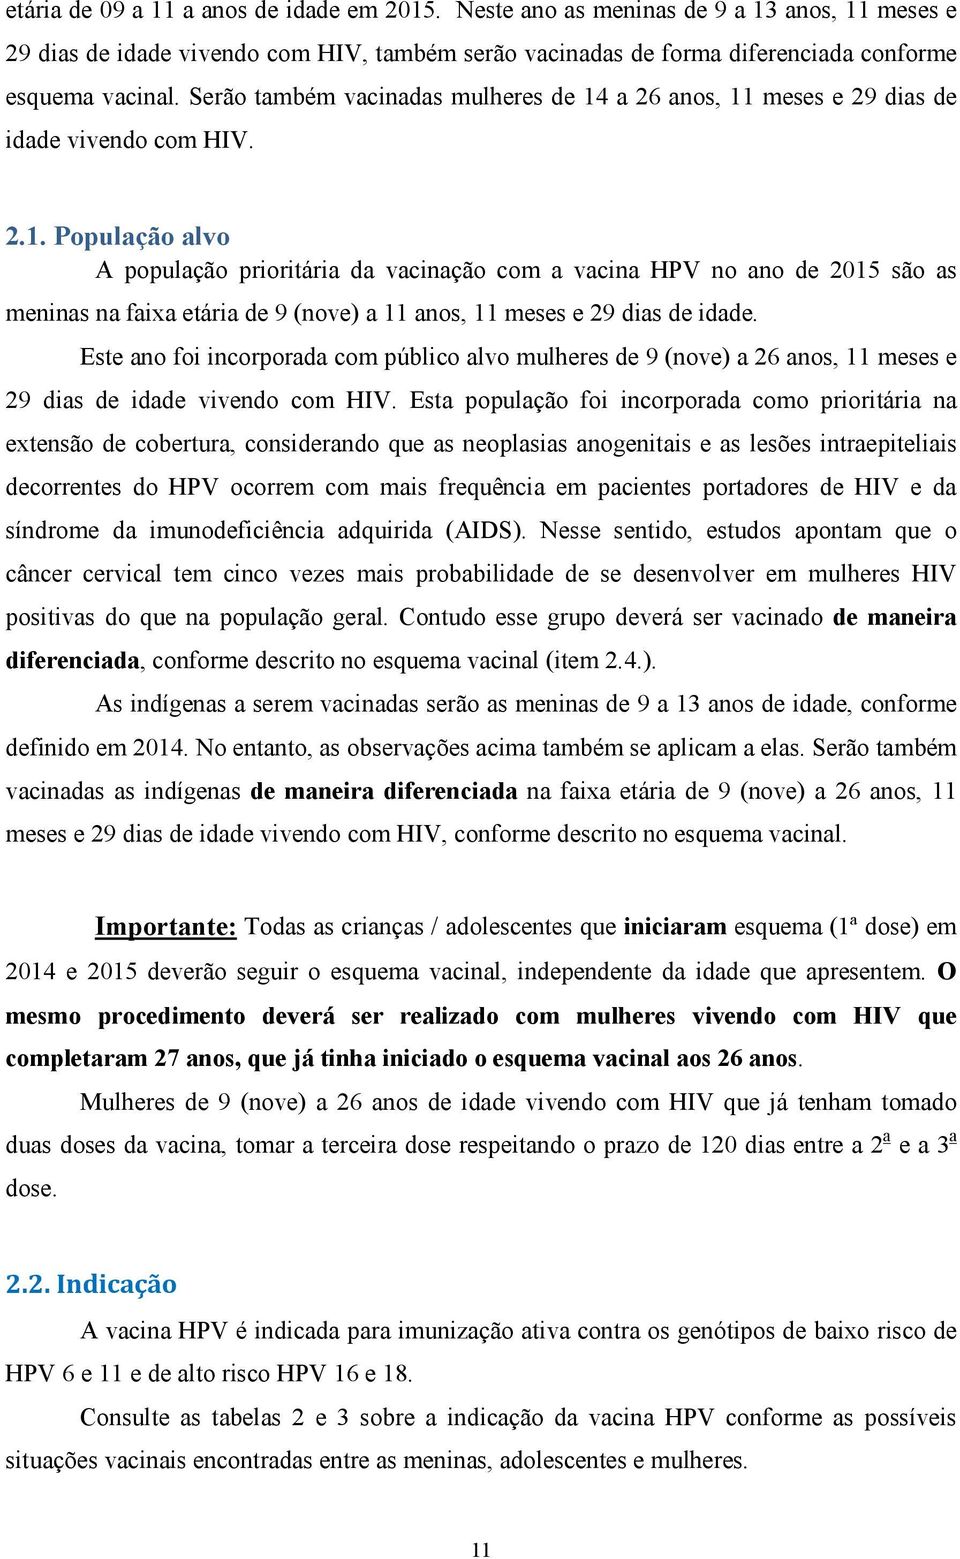 a 26 anos, 11 meses e 29 dias de idade vivendo com HIV. 2.1. População alvo A população prioritária da vacinação com a vacina HPV no ano de 2015 são as meninas na faixa etária de 9 (nove) a 11 anos, 11 meses e 29 dias de idade.